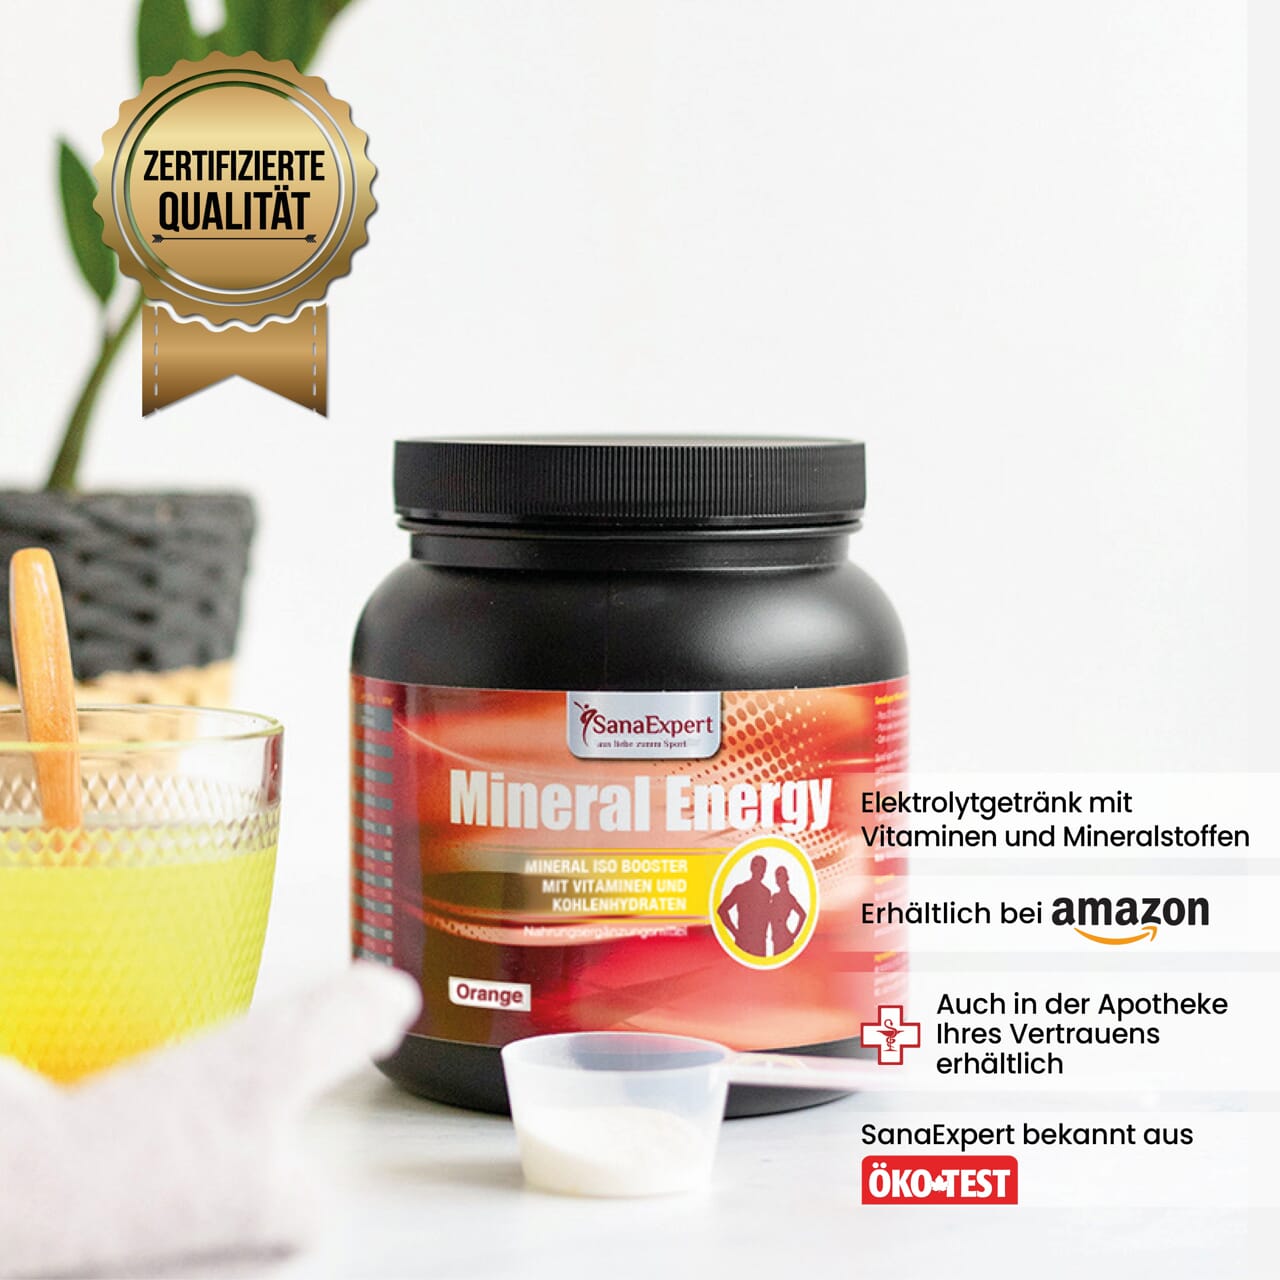 Mineral Energy Dose auf einer Küchenoberfläche neben einem Glas mit gelber Flüssigkeit und Orangenscheiben, Qualitätszertifikat im Bild.